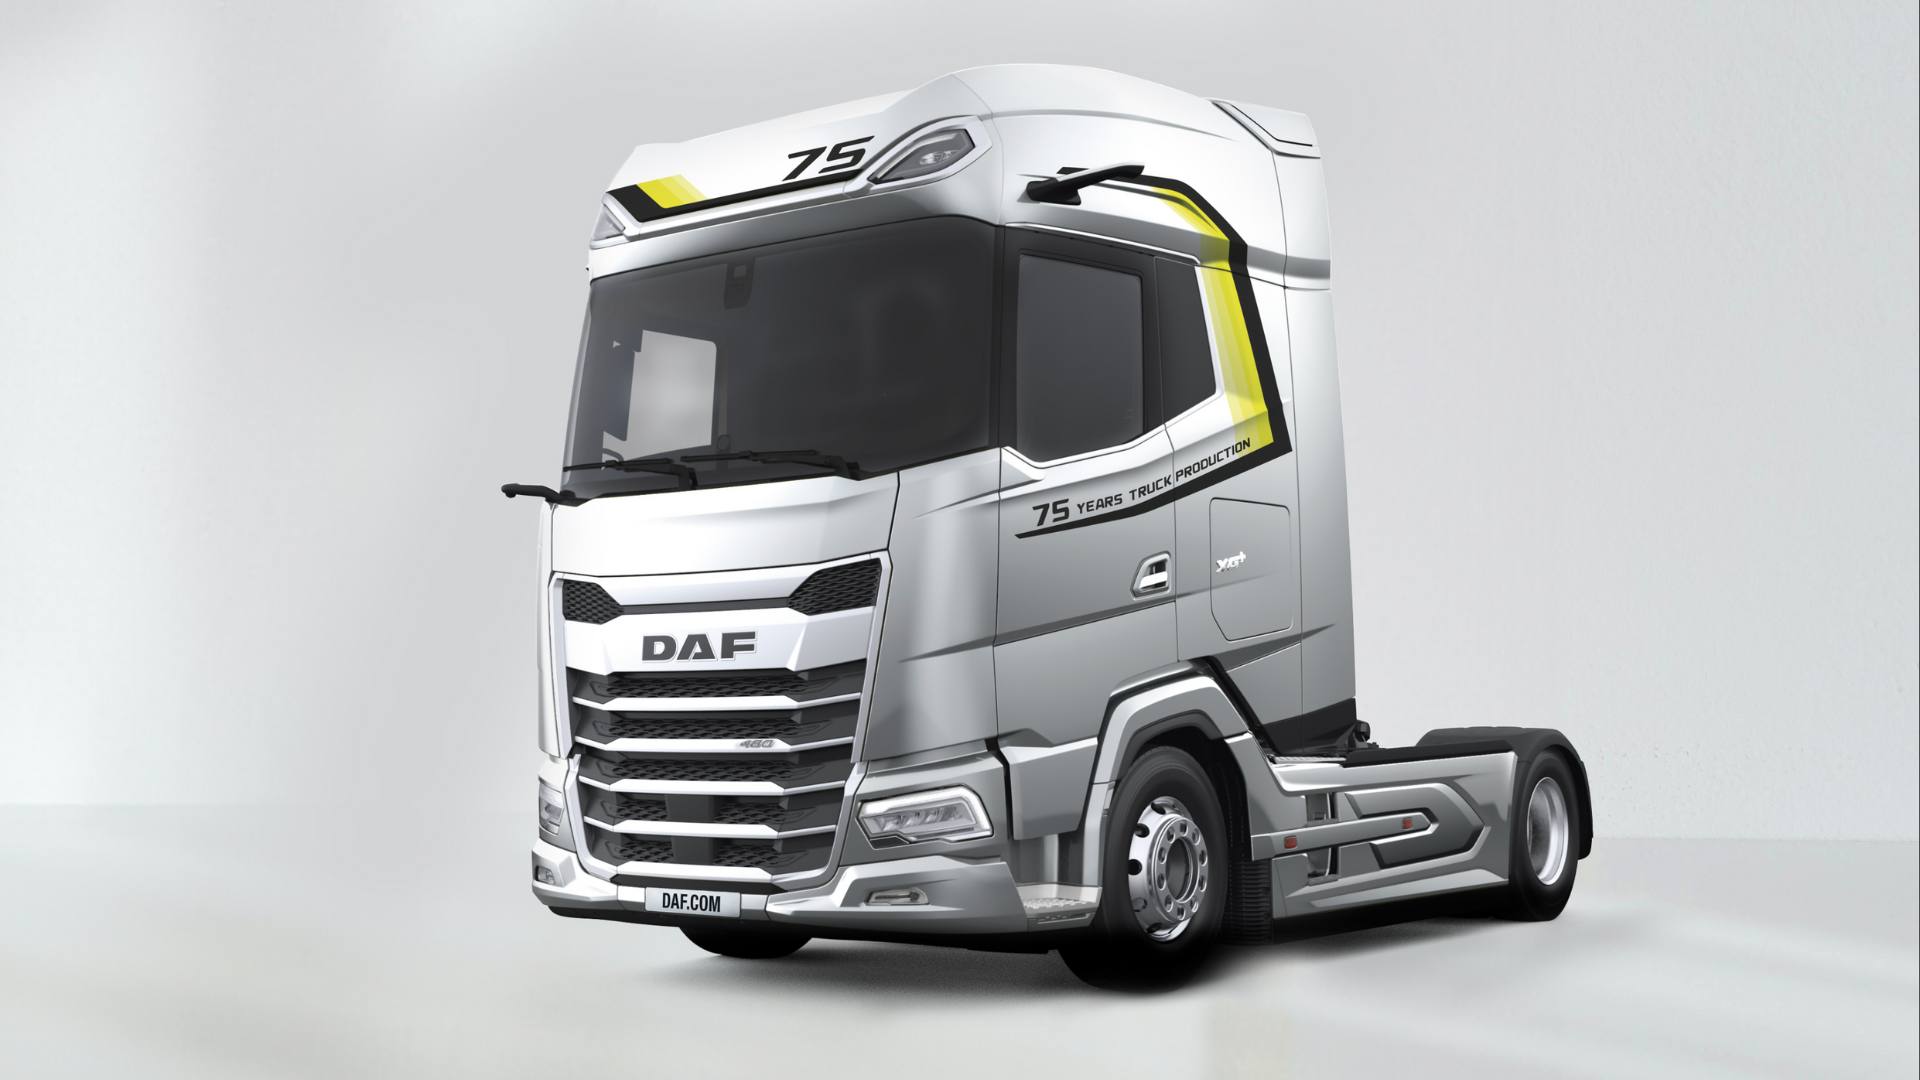 Une édition unique du DAF XG+ marque 75 ans de production de camions